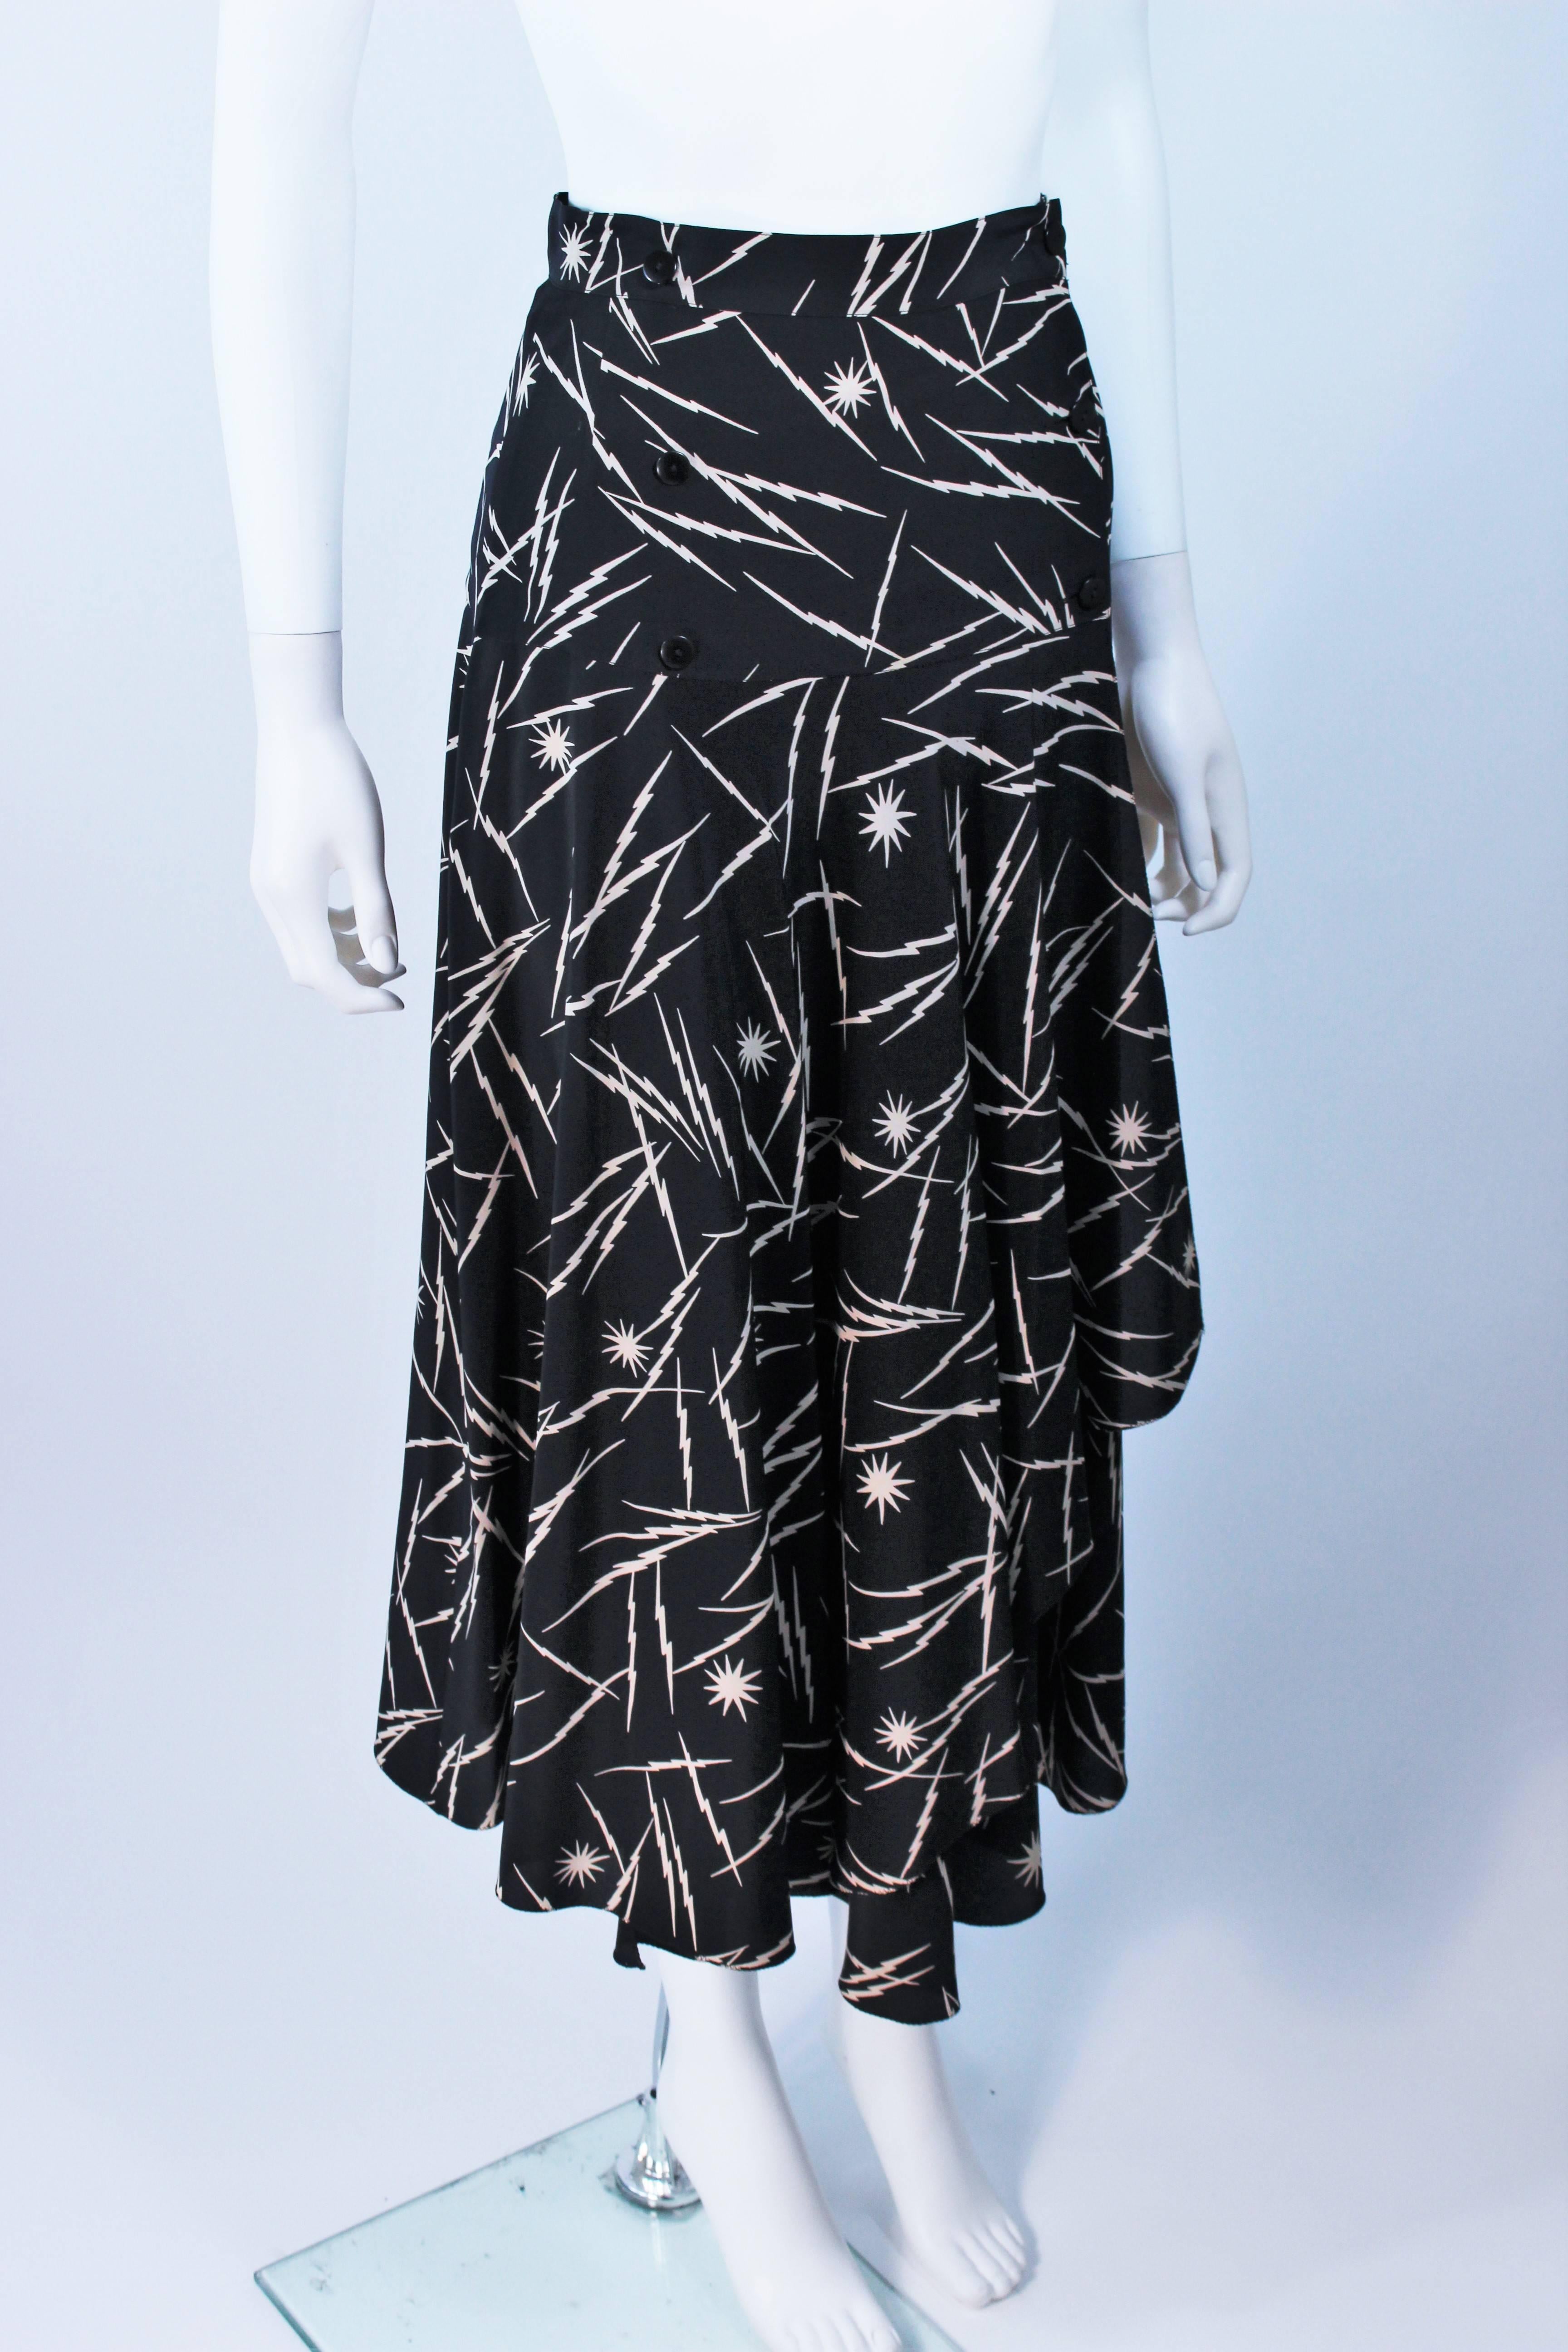 Women's KRIZIA Electrified Black Silk Print Draped Wrap Skirt Size 2 4 For Sale